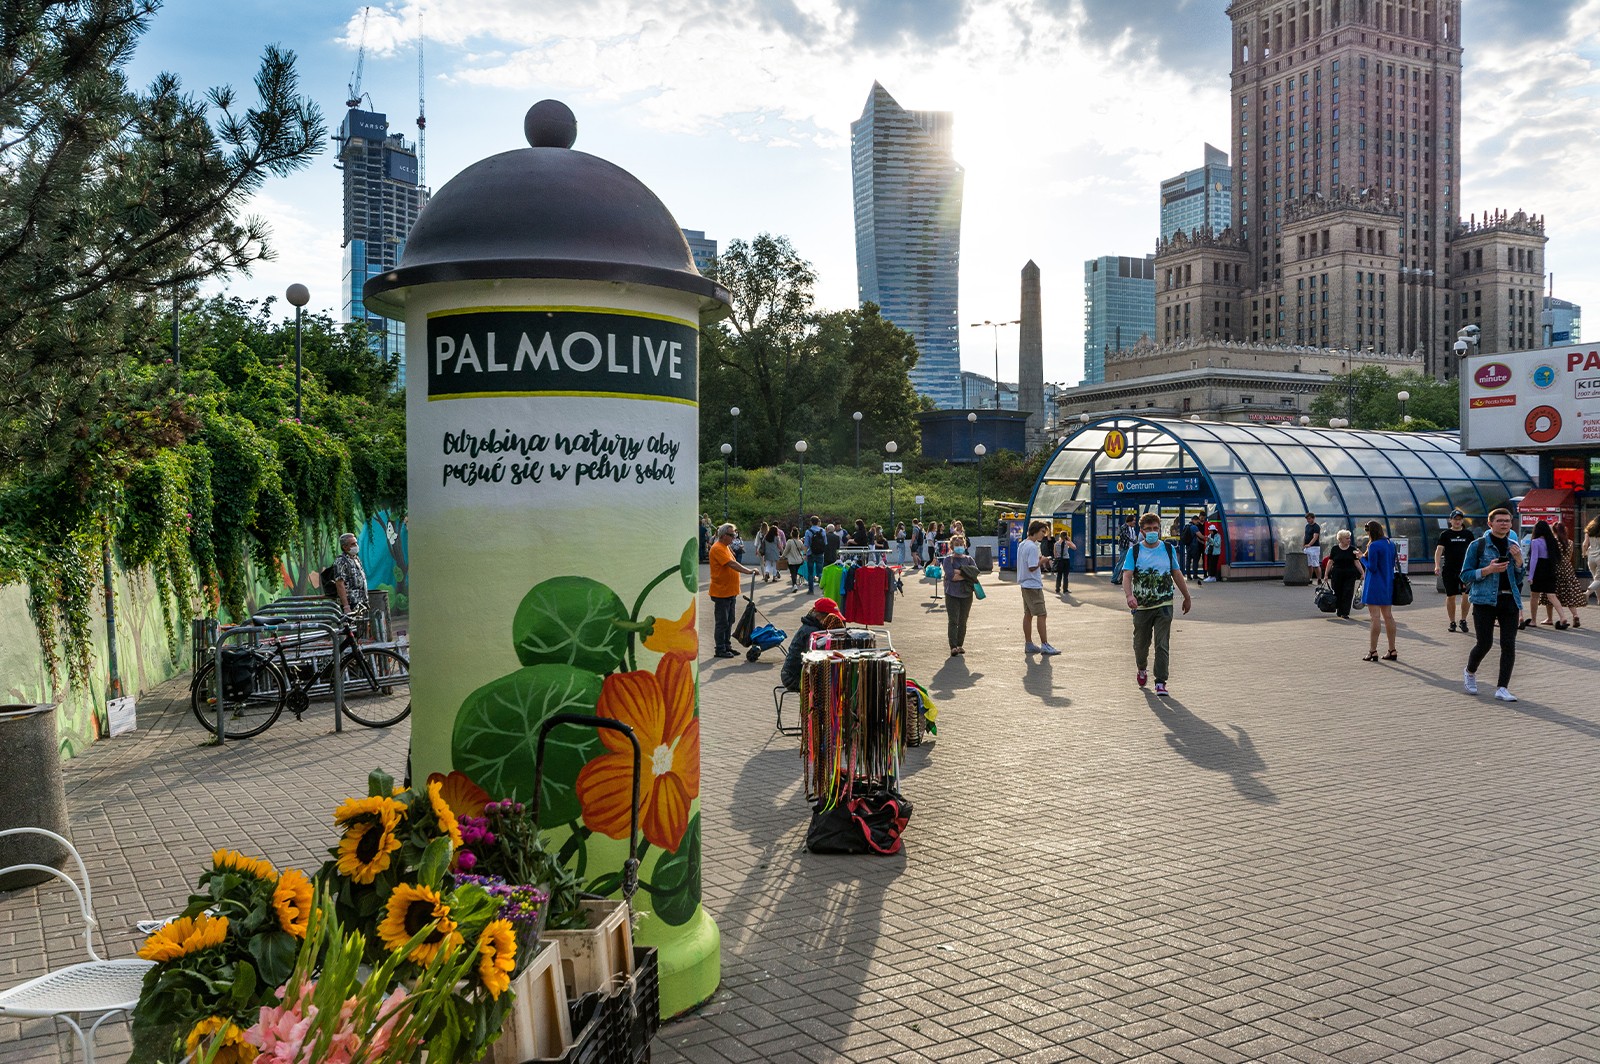 Mural reklamowy dla Palmolive w centrum Warszawy | Odrobina natury aby poczuć się w pełni sobą | Portfolio